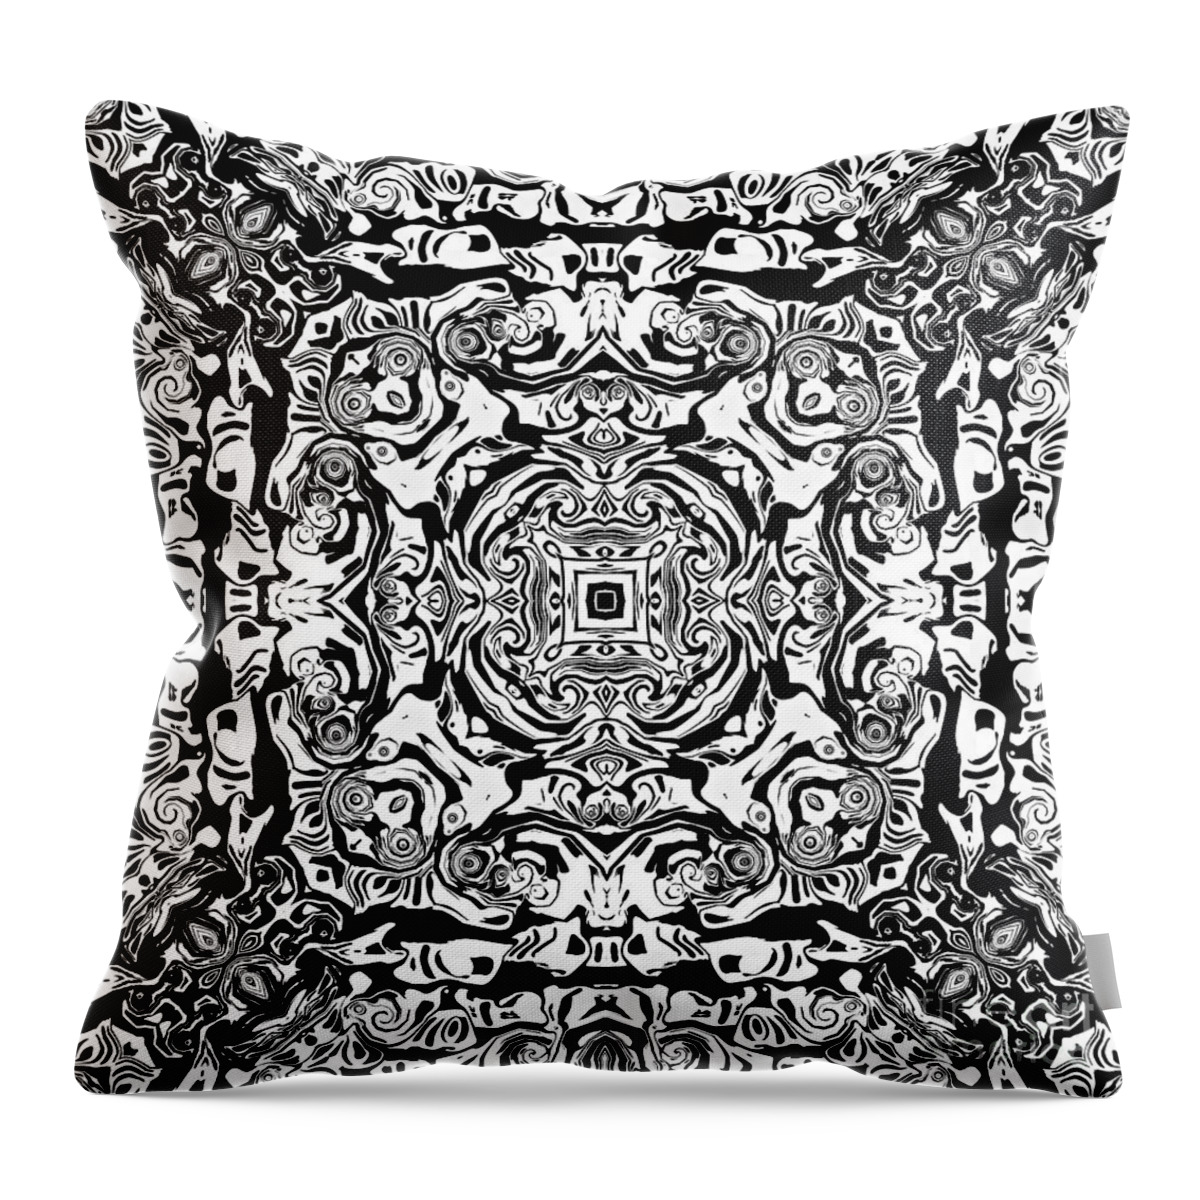 Mandala Throw Pillow featuring the digital art Monotone Mandala #1 by Phil Perkins